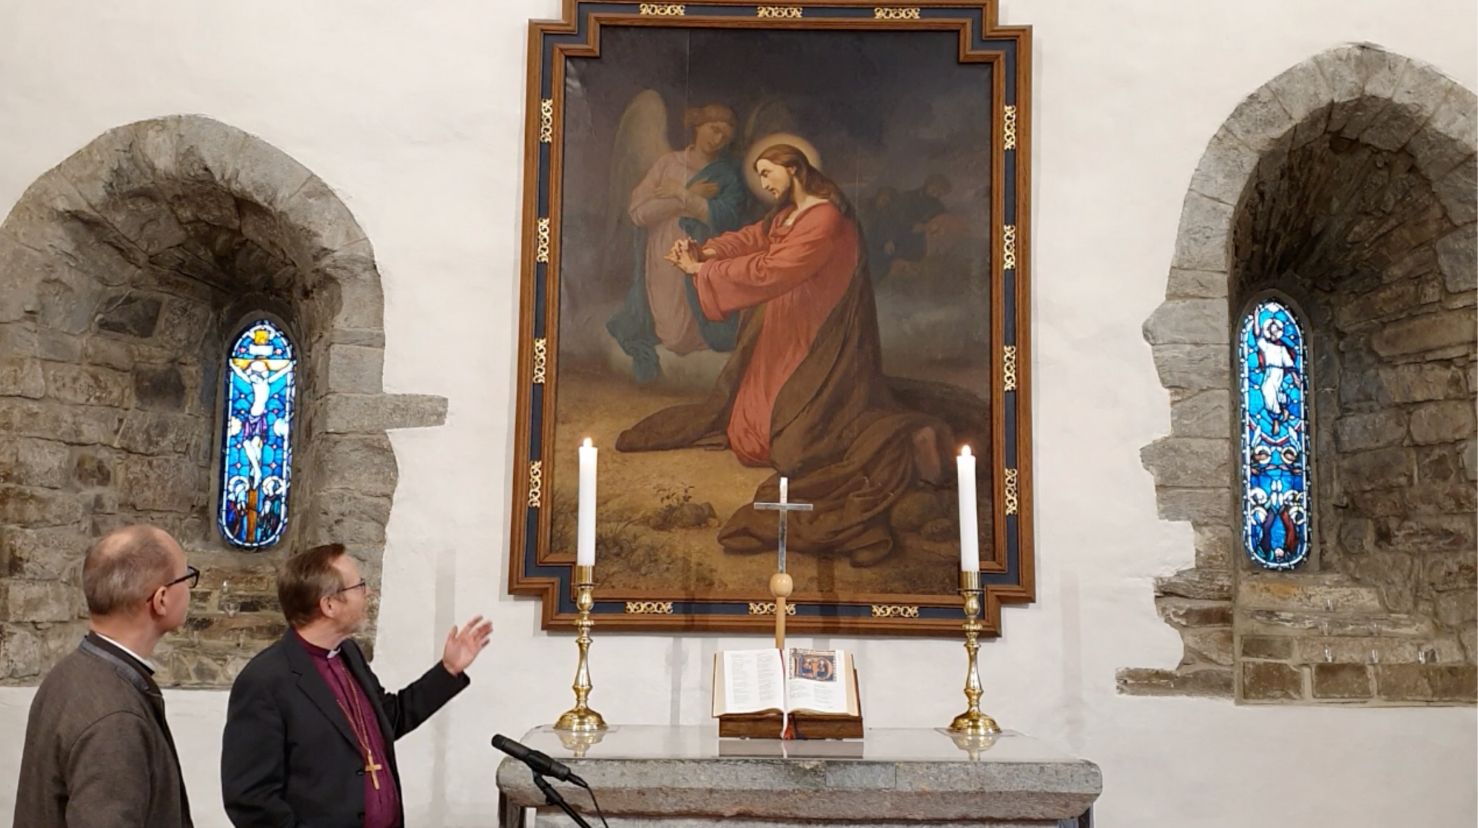 Jesus i Getsemane er motivet på altertavlen i Fana kirke som biskopen og domprosten samtaler om. Foto:Torfinn Wang